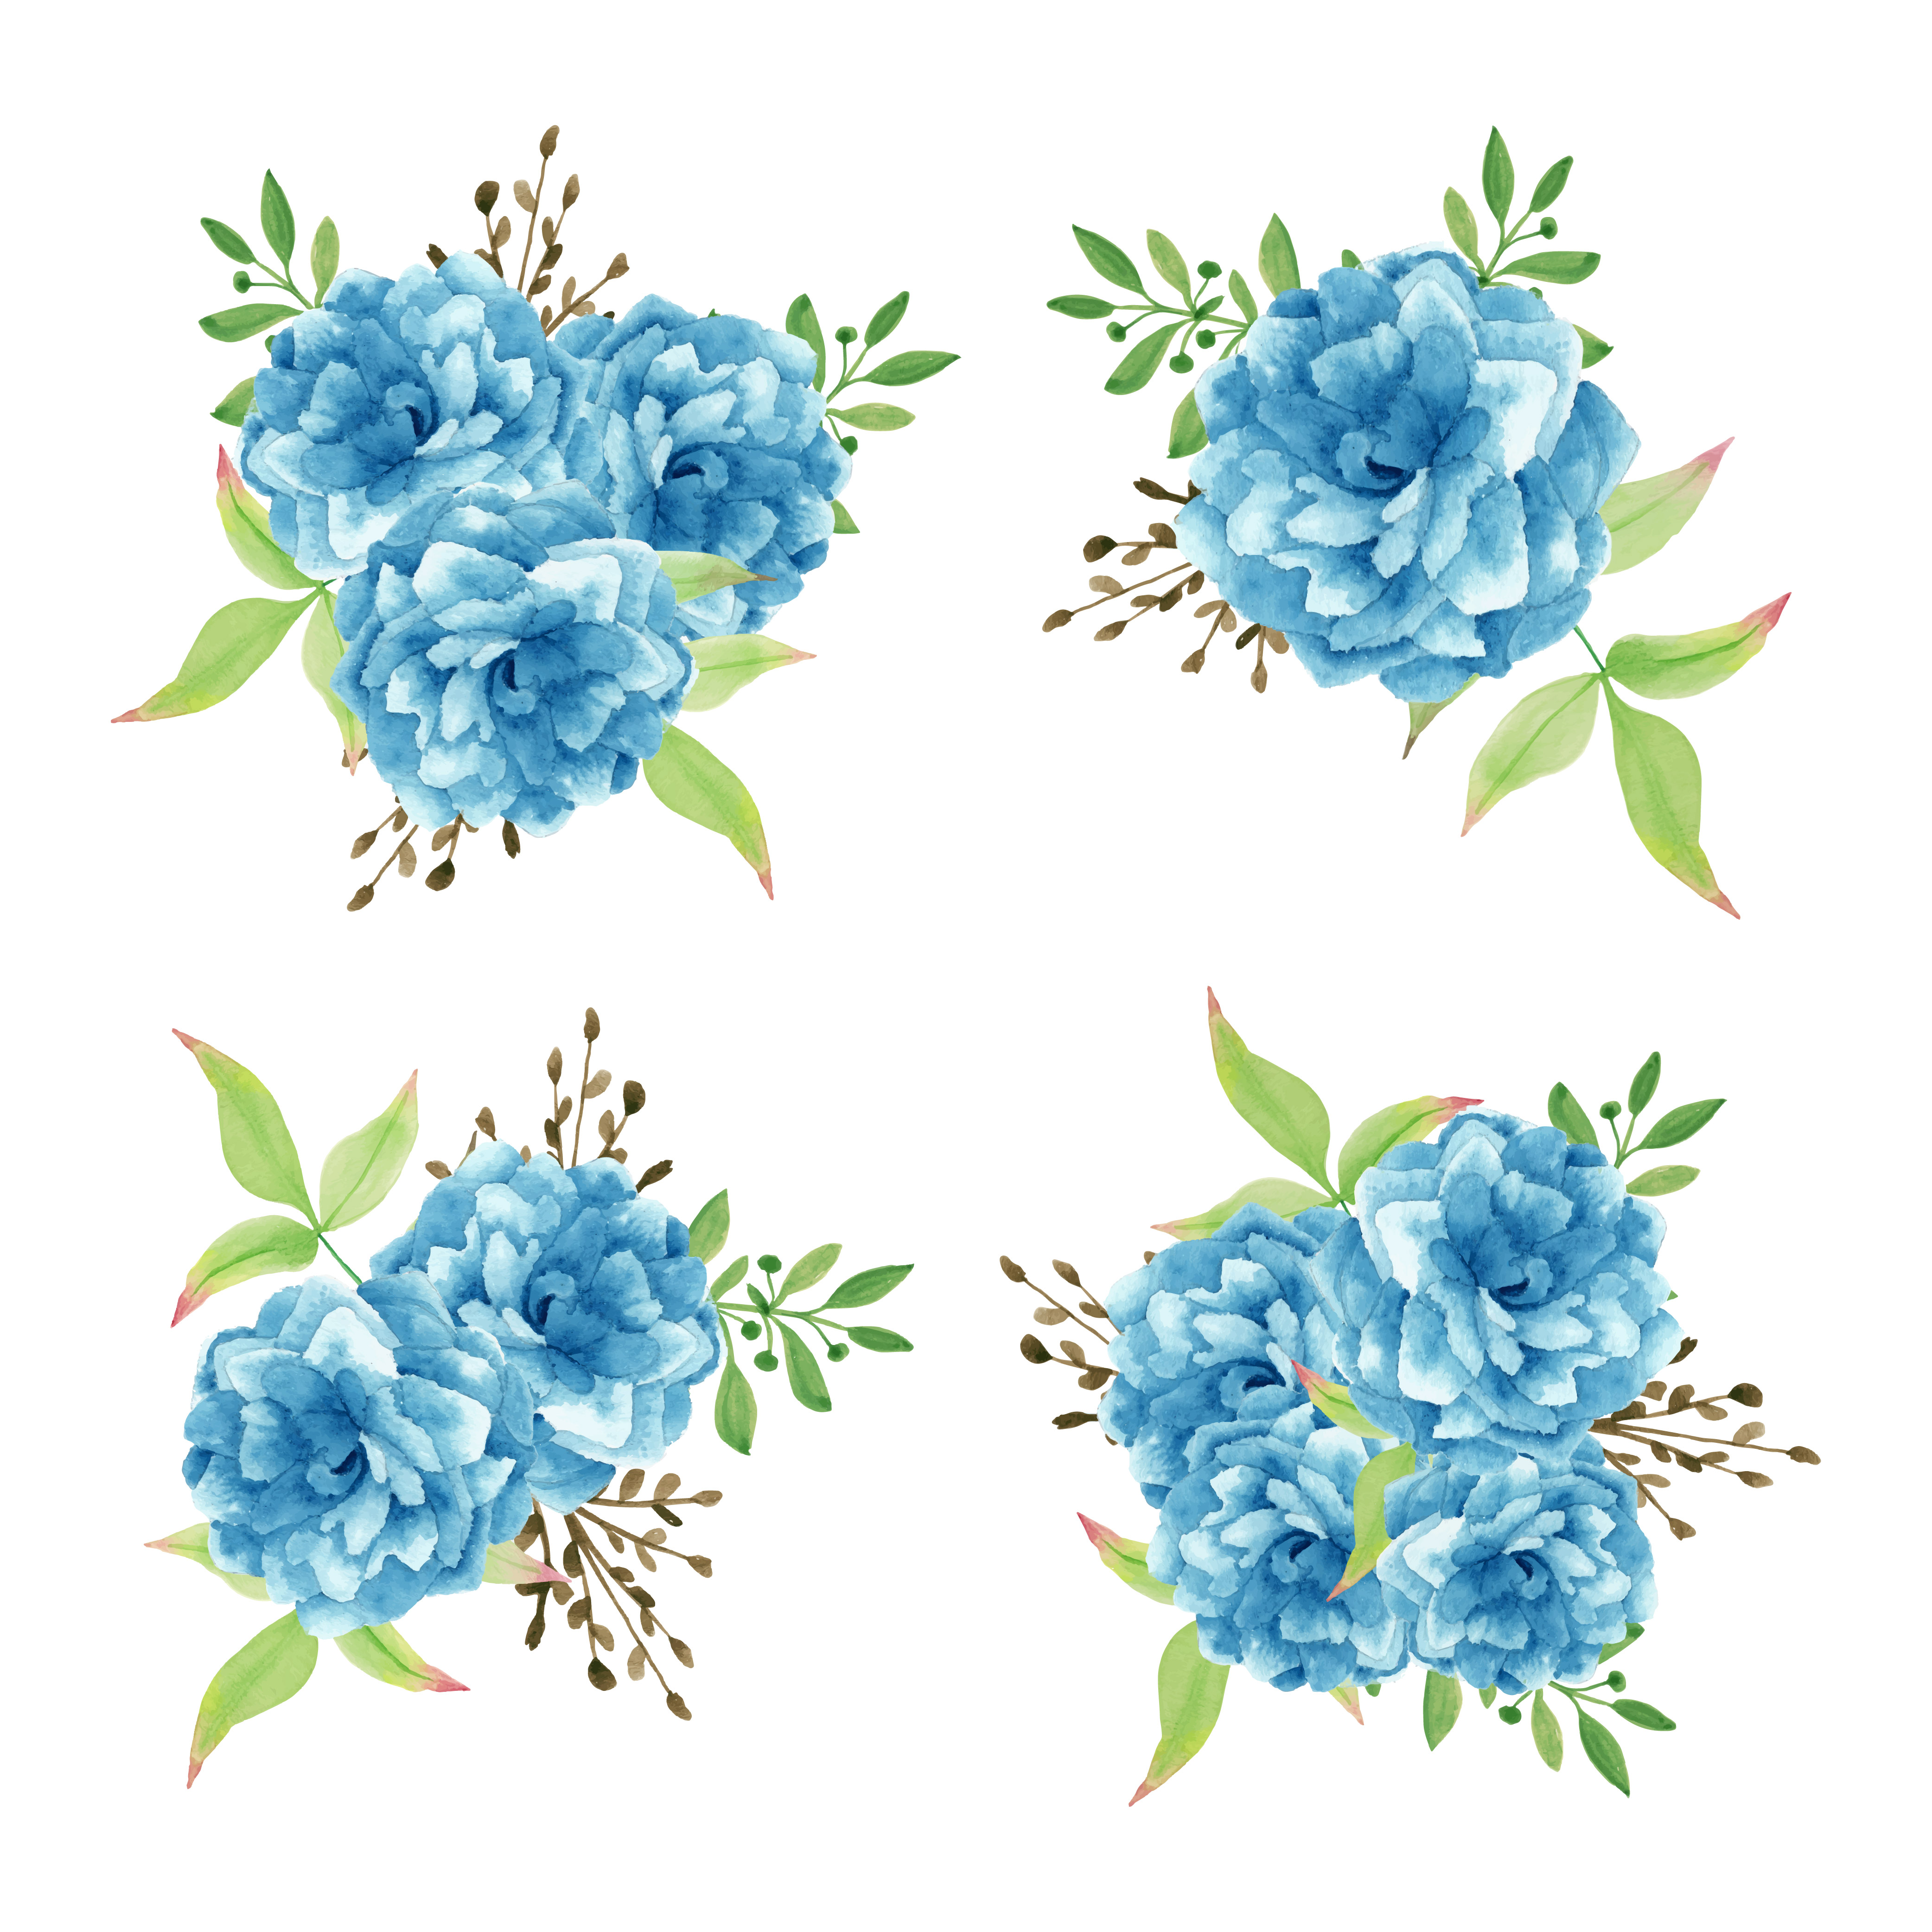 Download Watercolor blue flower bouquet set - Download Free Vectors ...